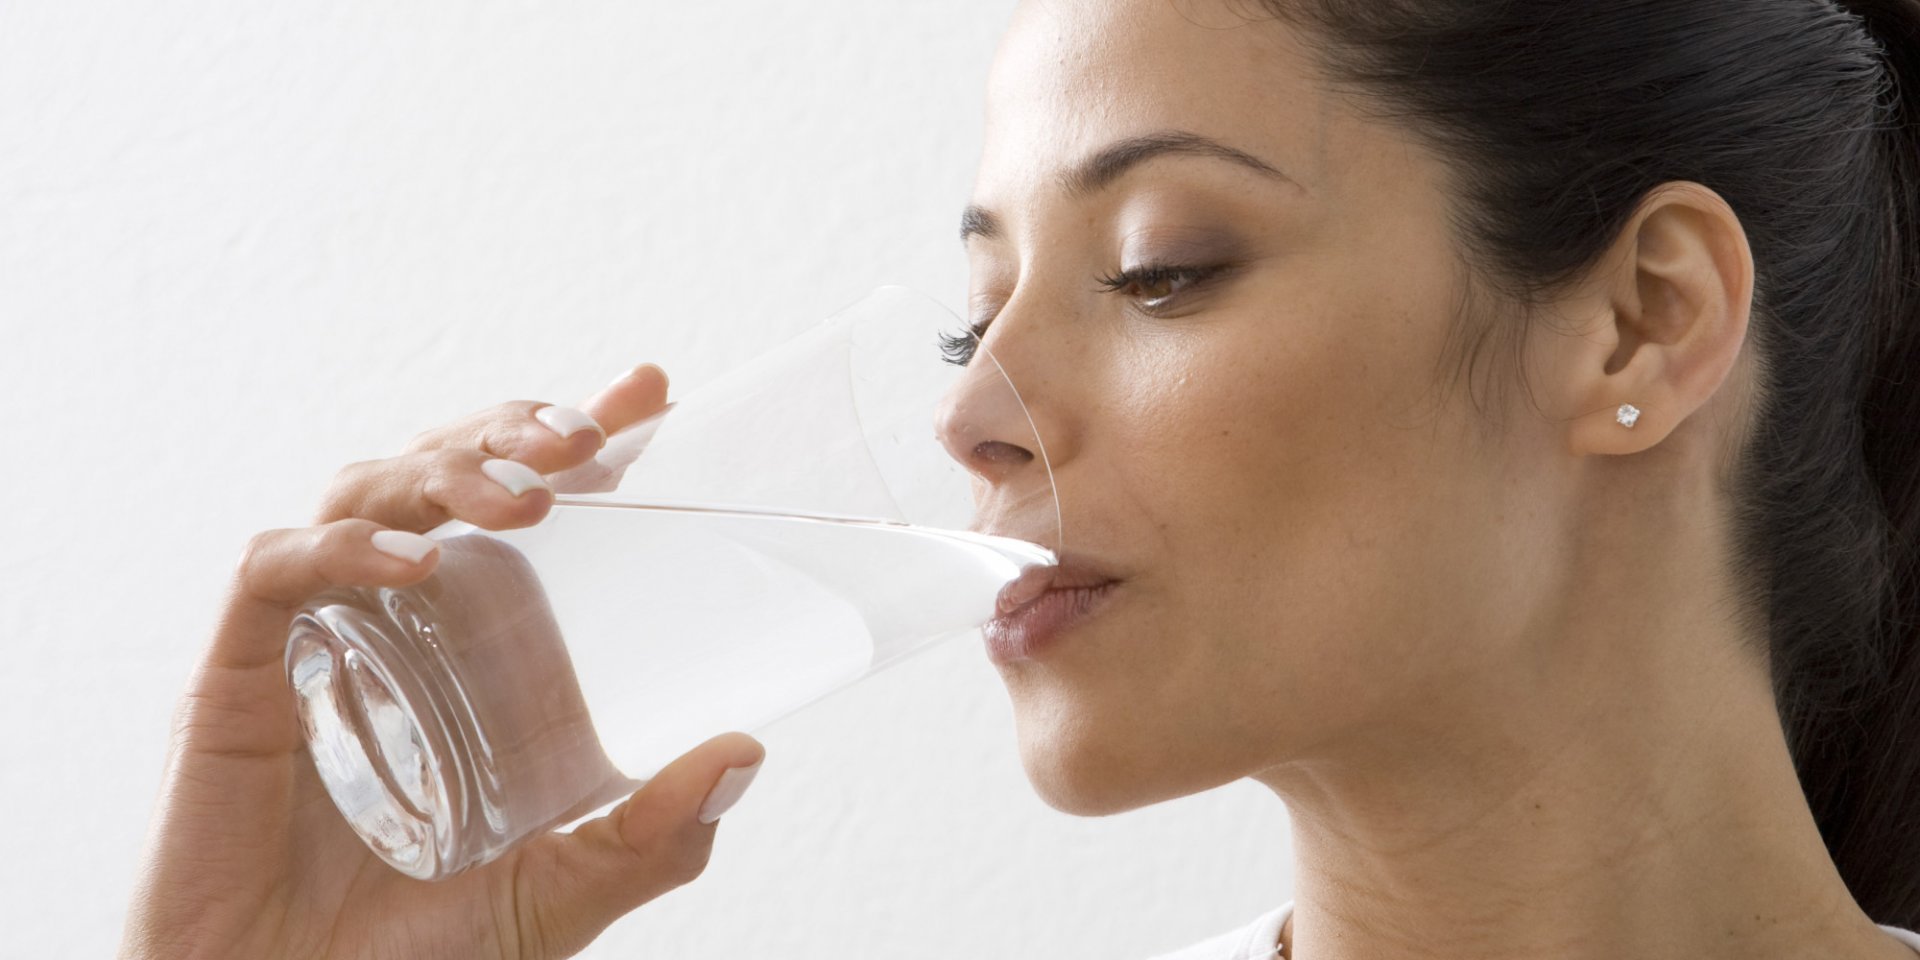 Тест: Арьс шингэний дутагдалд орсон эсэхийг шалгацгаая. Та хангалттай ус ууж байна уу?